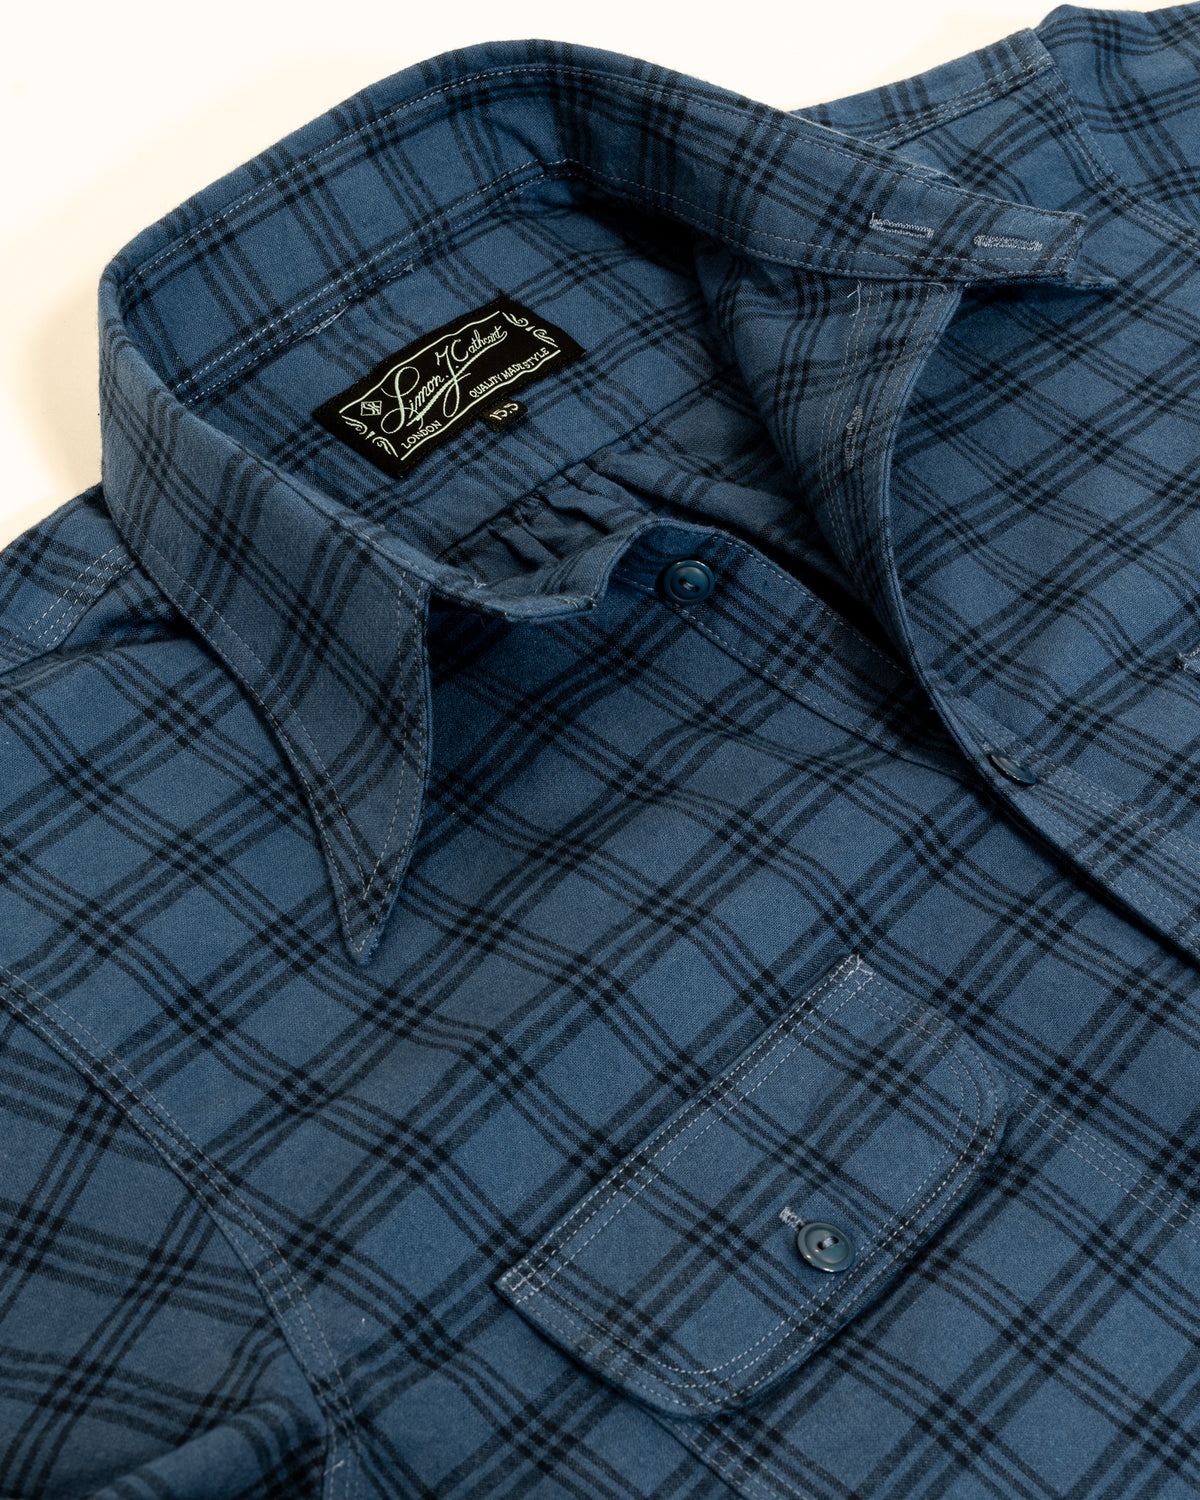 Sample Blue Yukon Shirt - Size 16.5